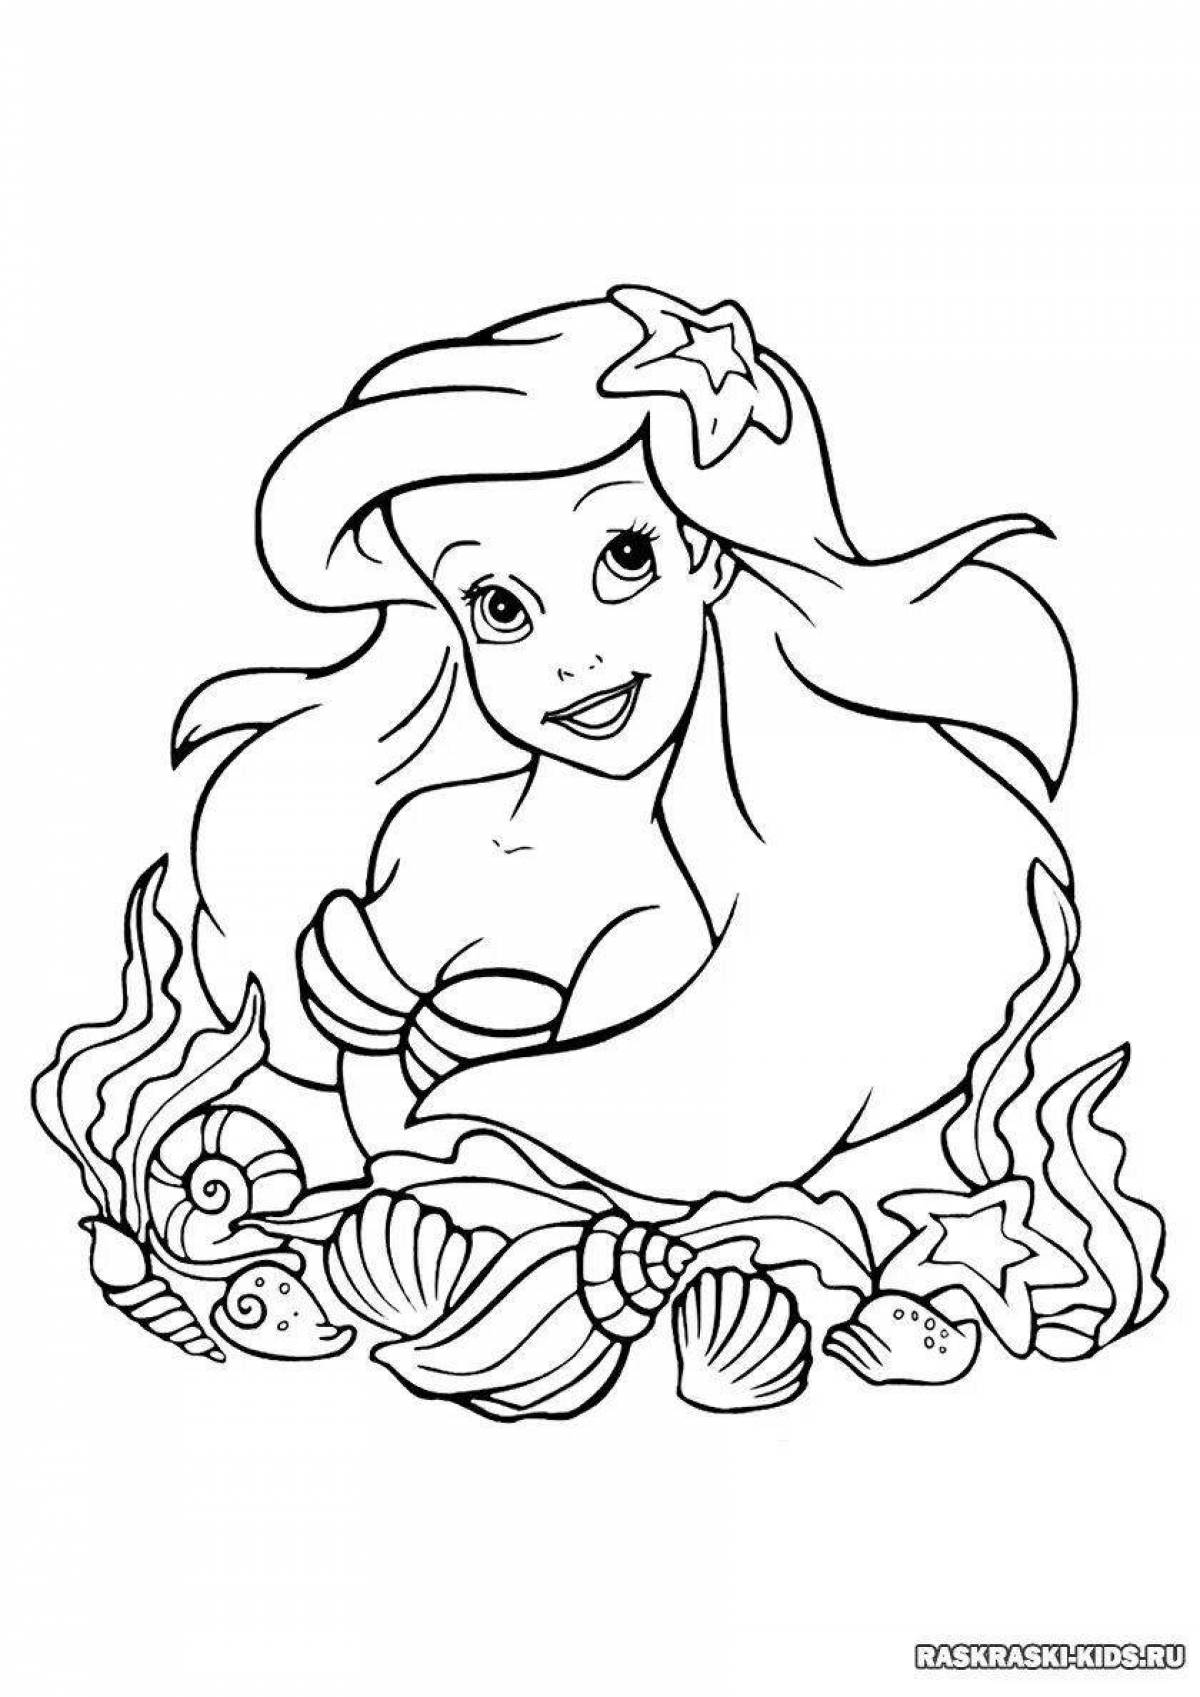 Disney exotic mermaid coloring book